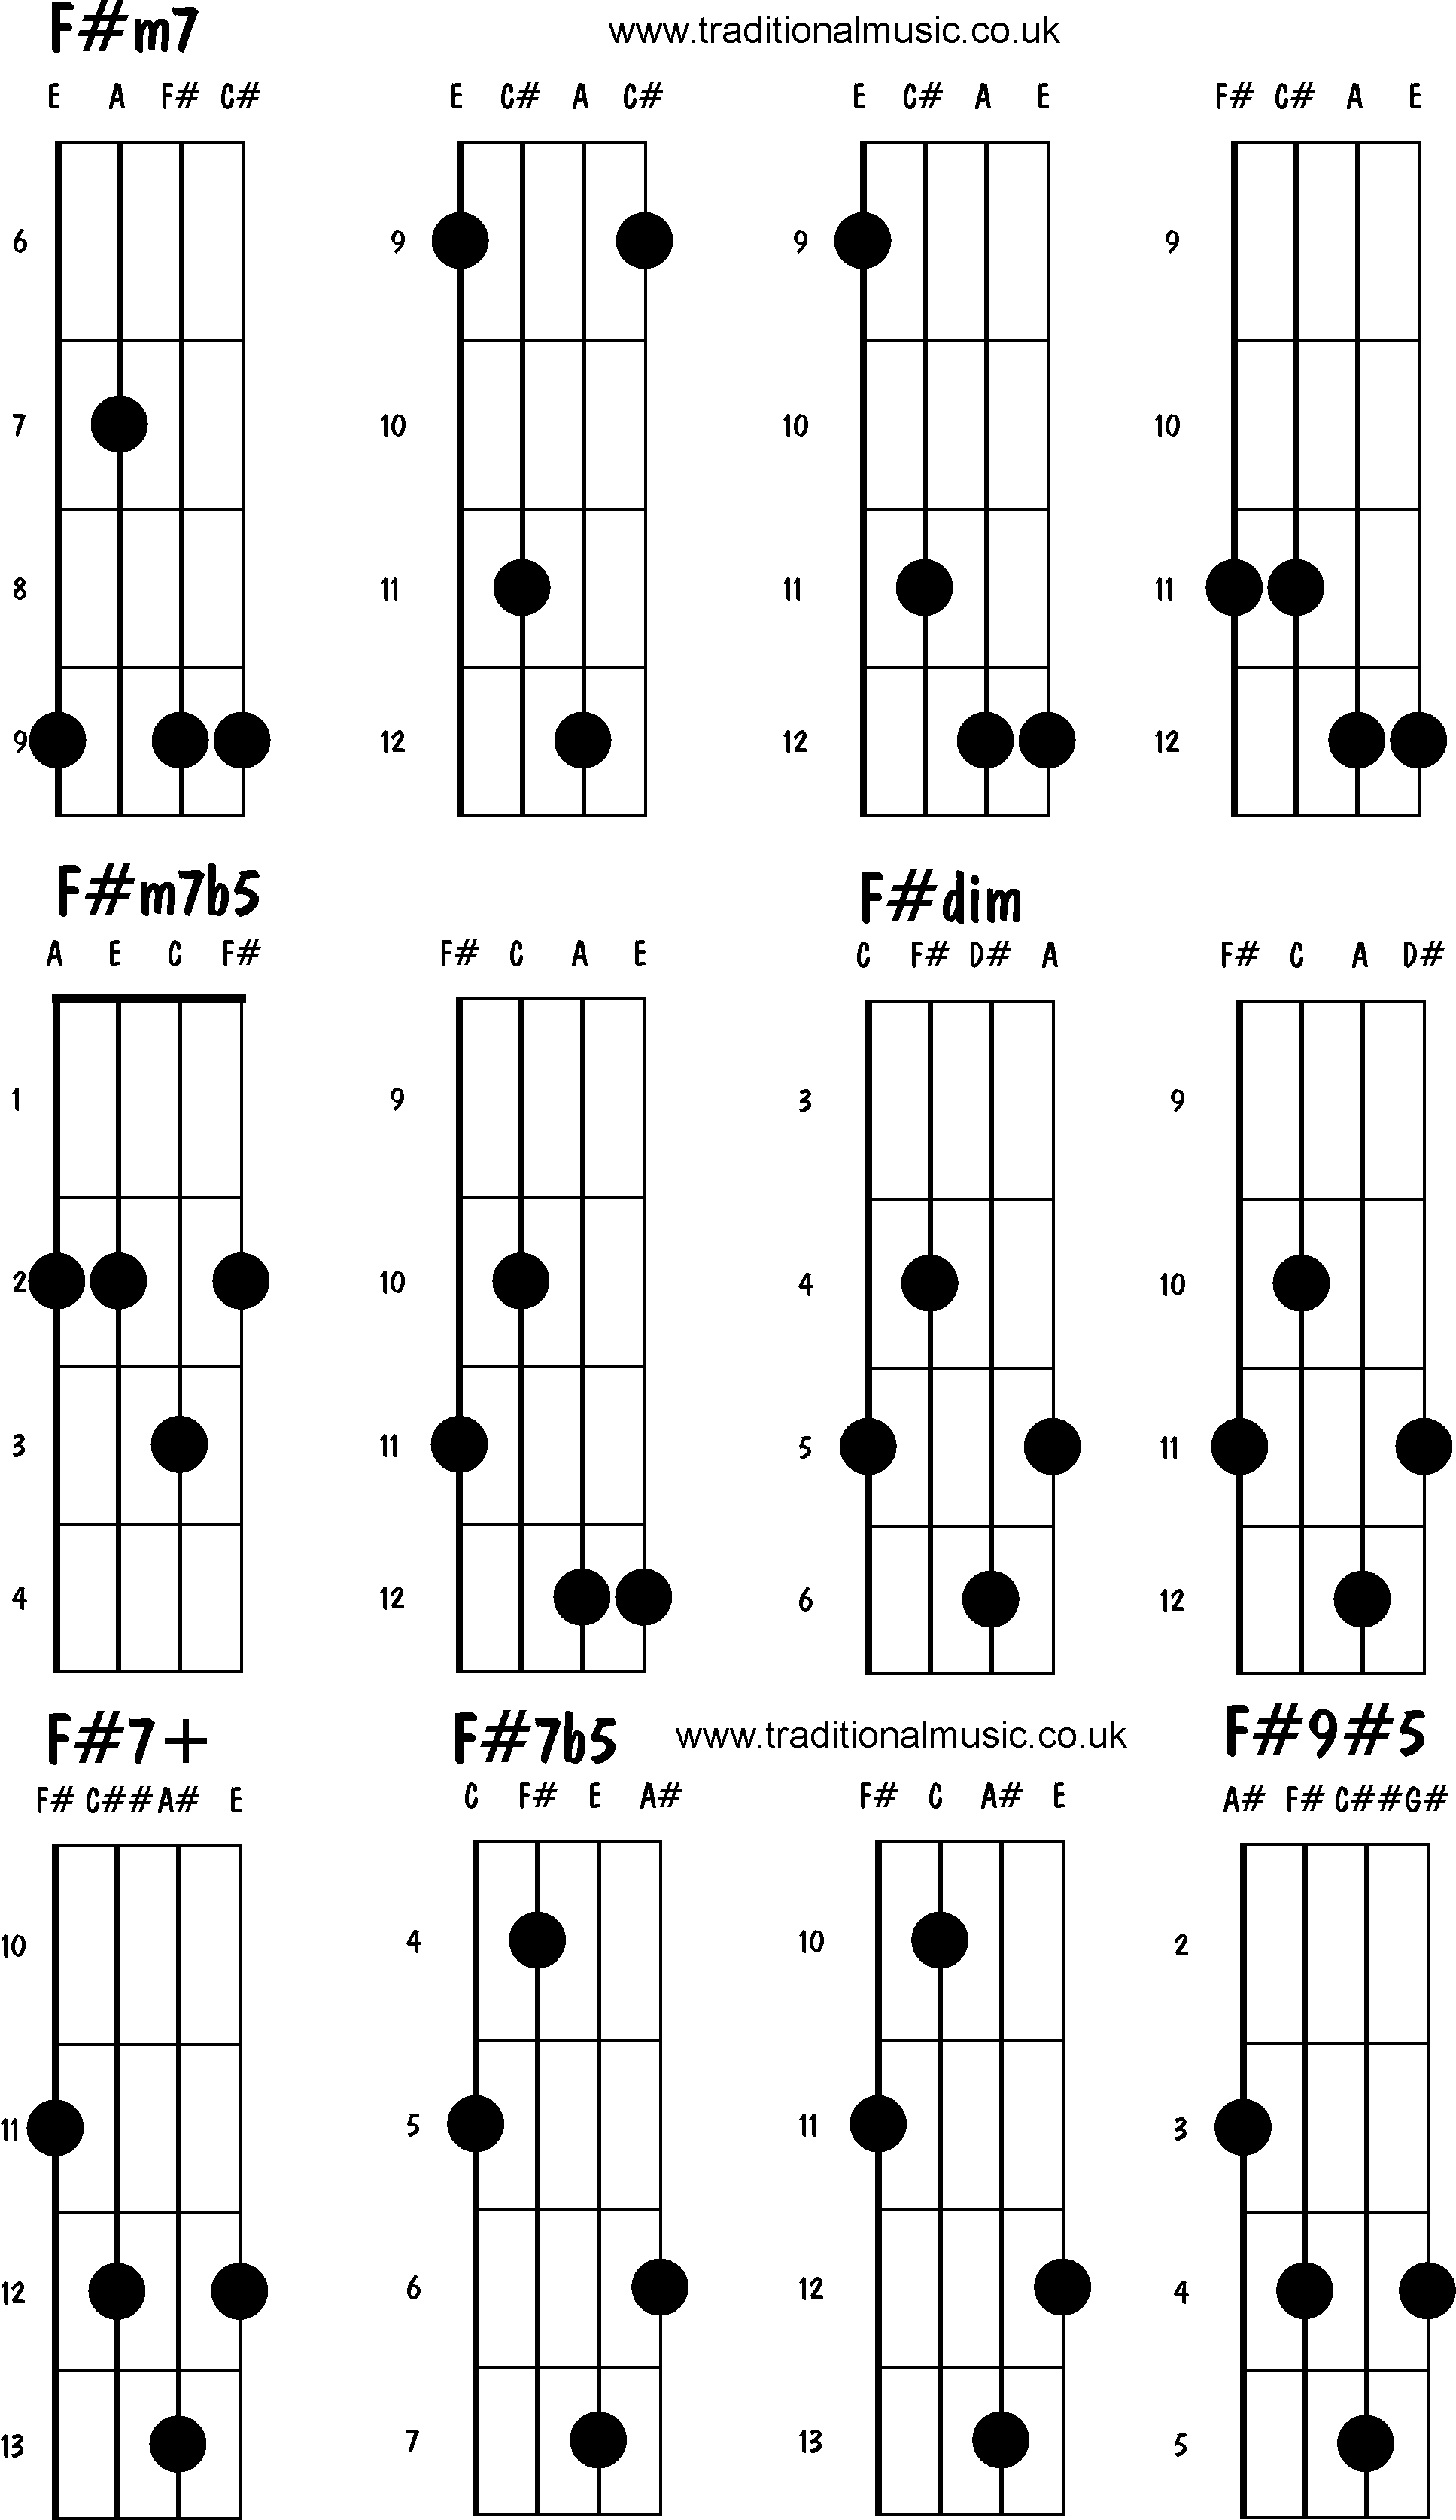 Advanced mandolin chords: F#m7, F#m7b5, F#dim, F#7+, F#7b5, F#9#5